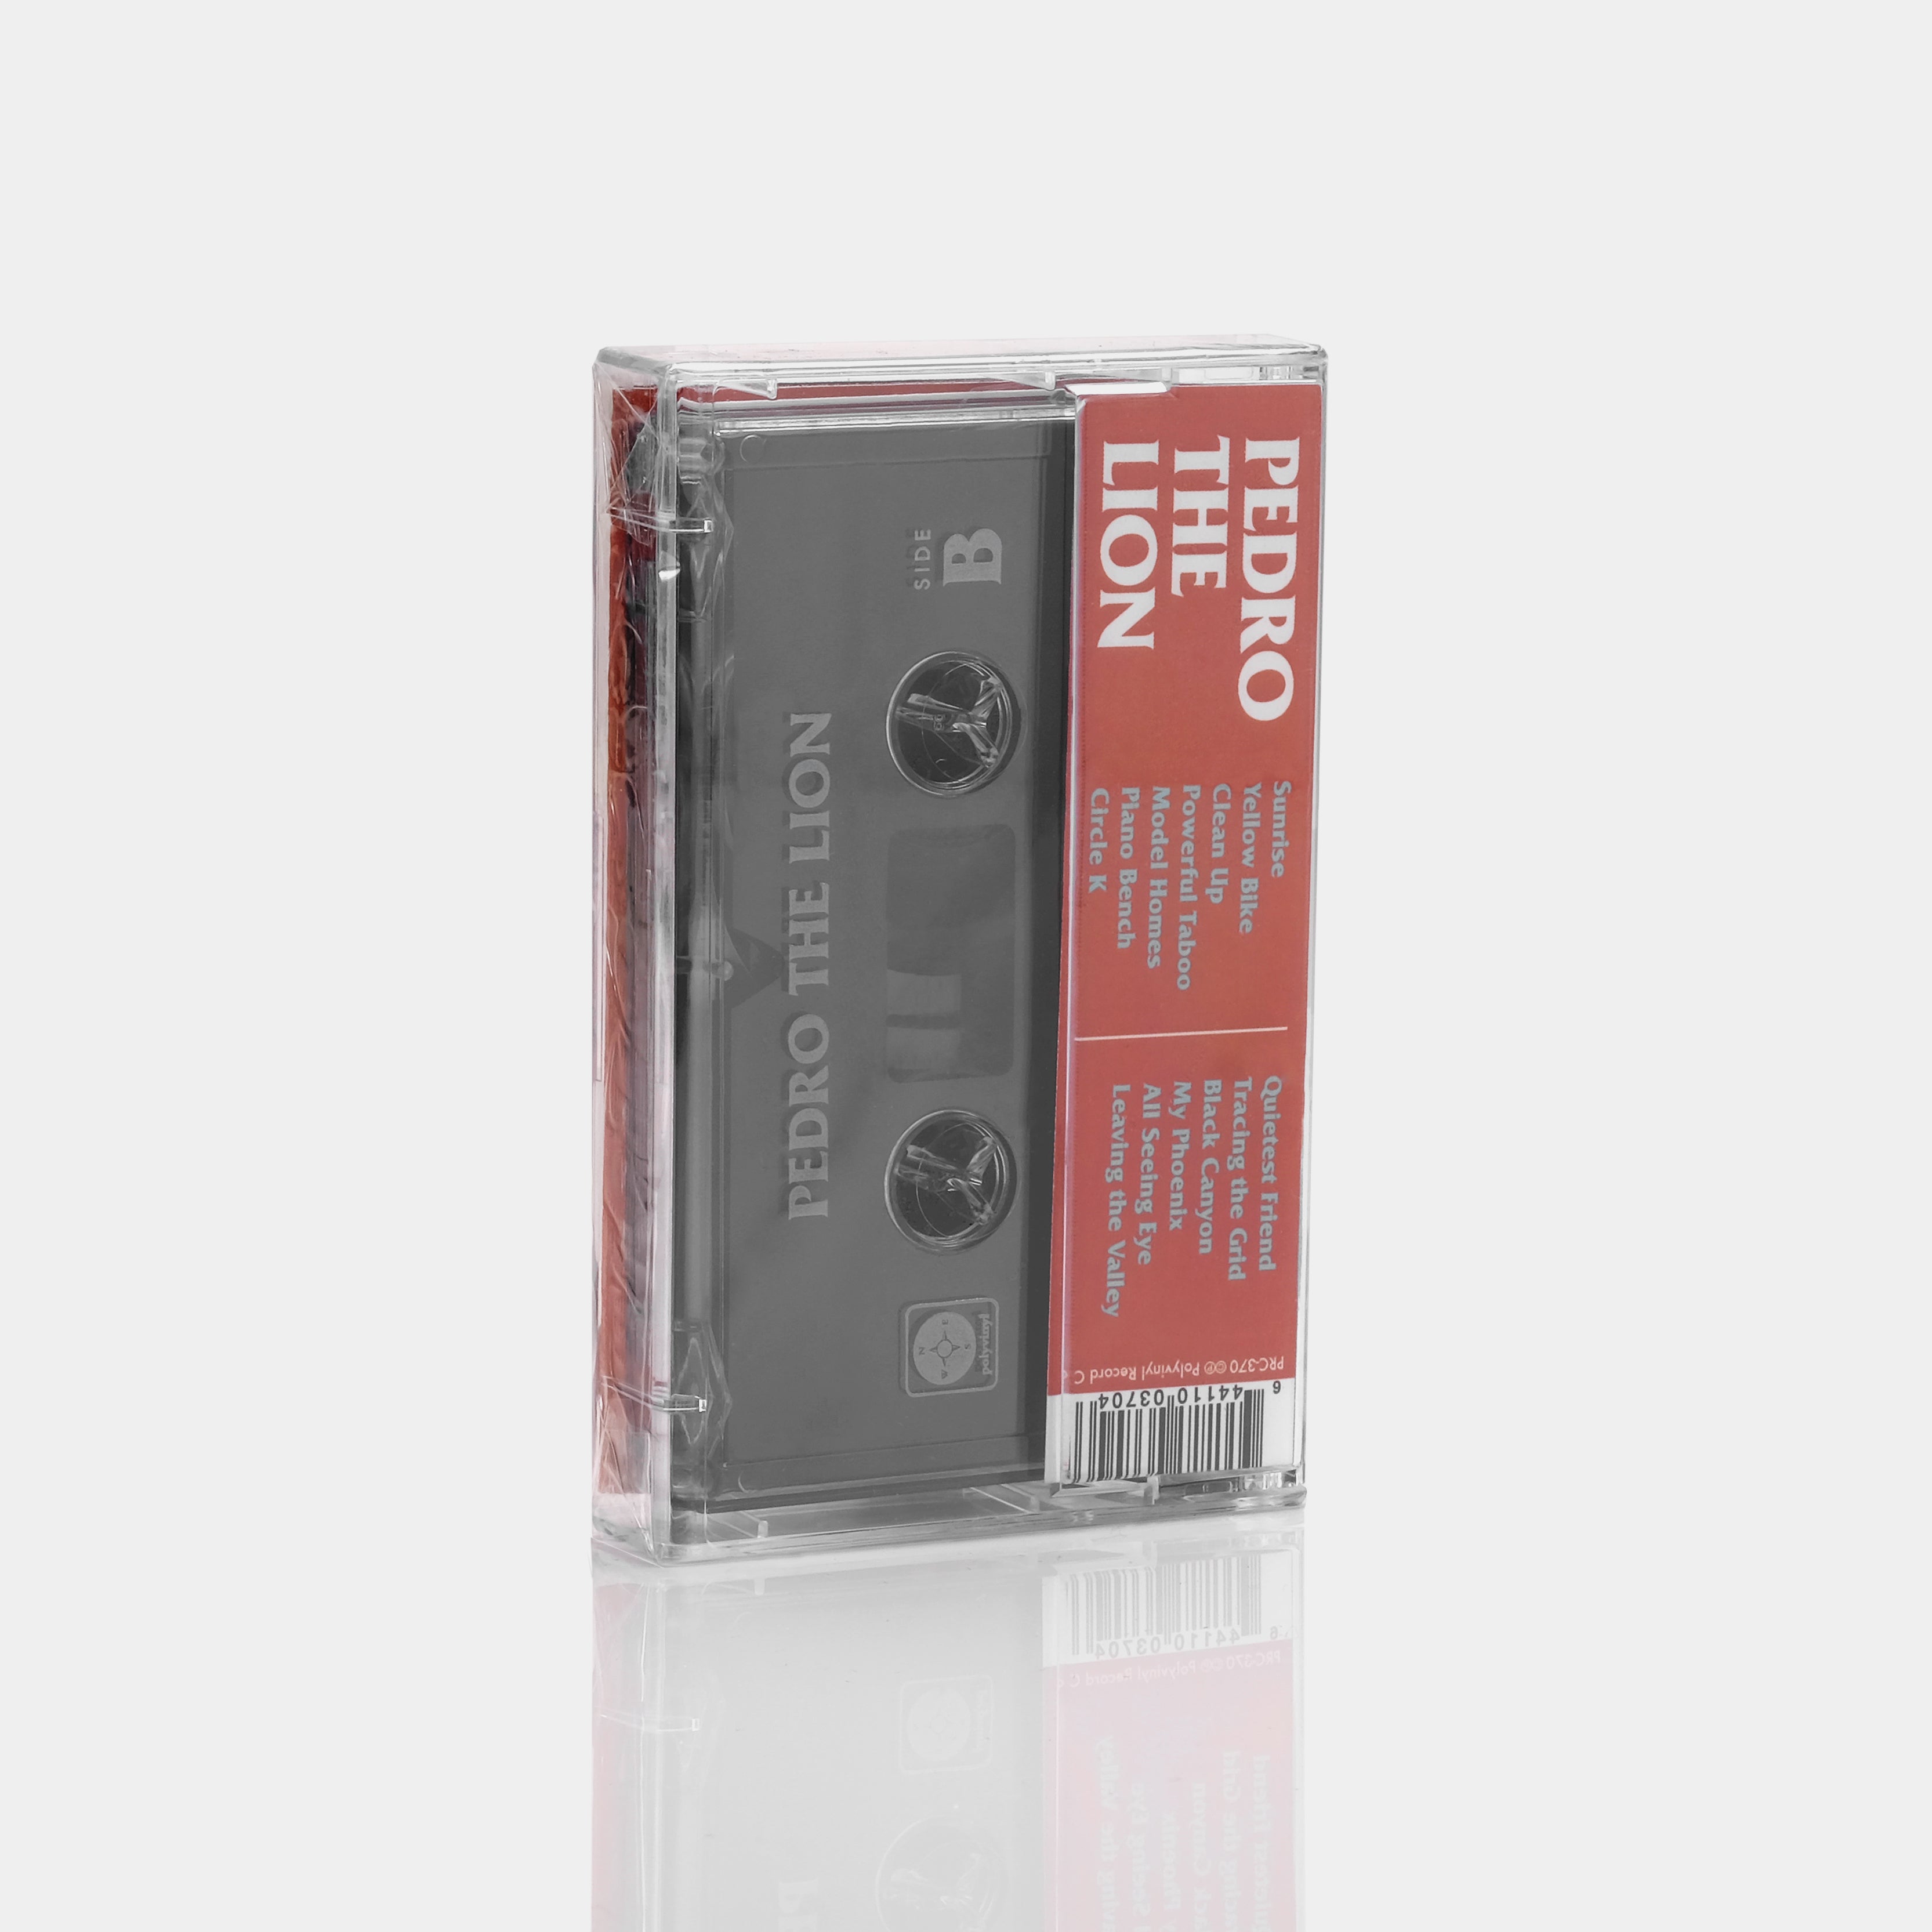 Pedro The Lion - Phoenix ‎(2019) Cassette Tape